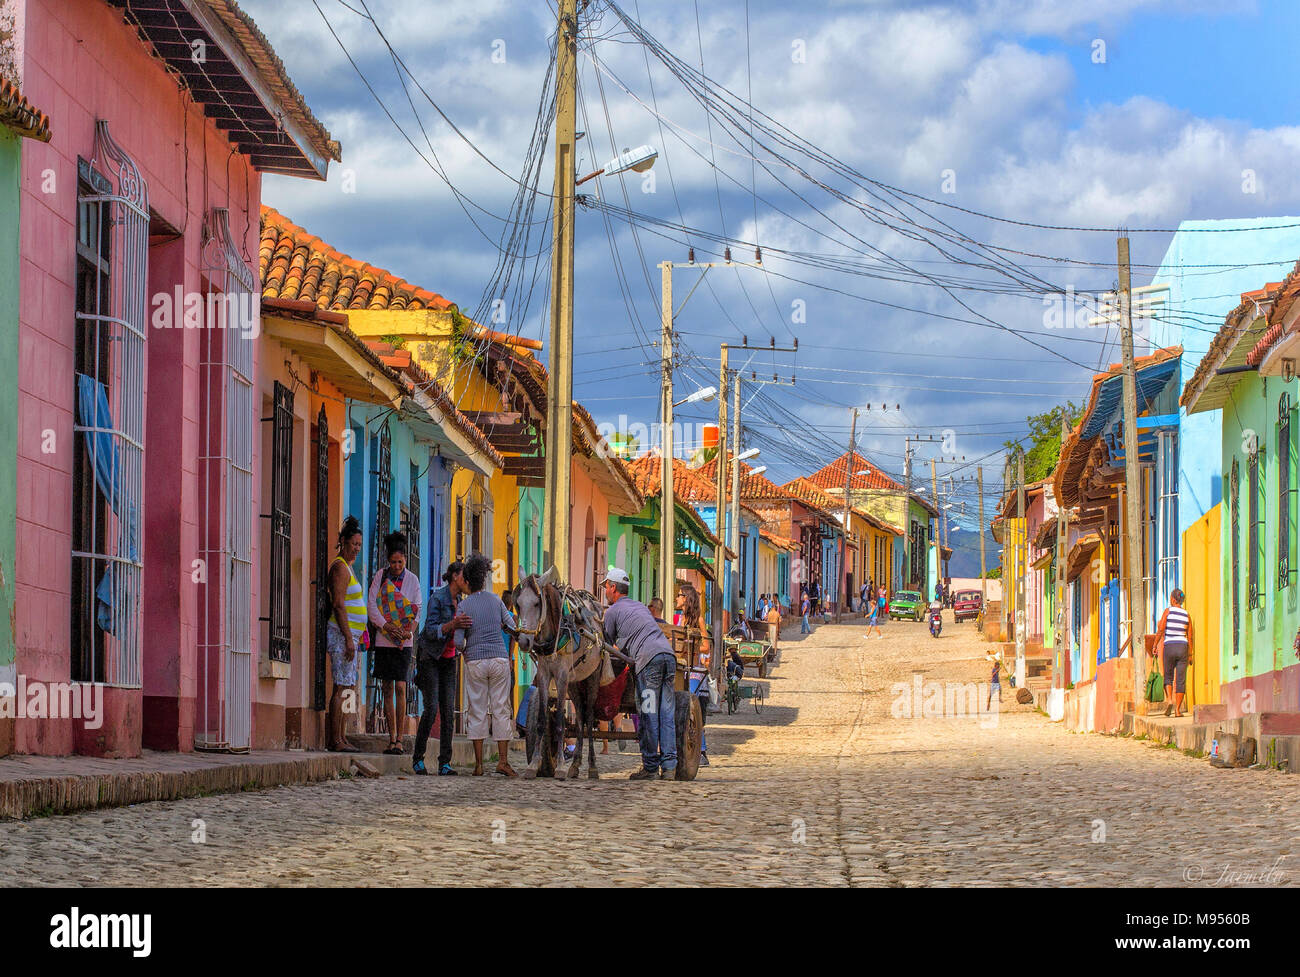 Case particular Trinidad and colorful streets, Patrimonio Mundial de la Humanidad Stock Photo